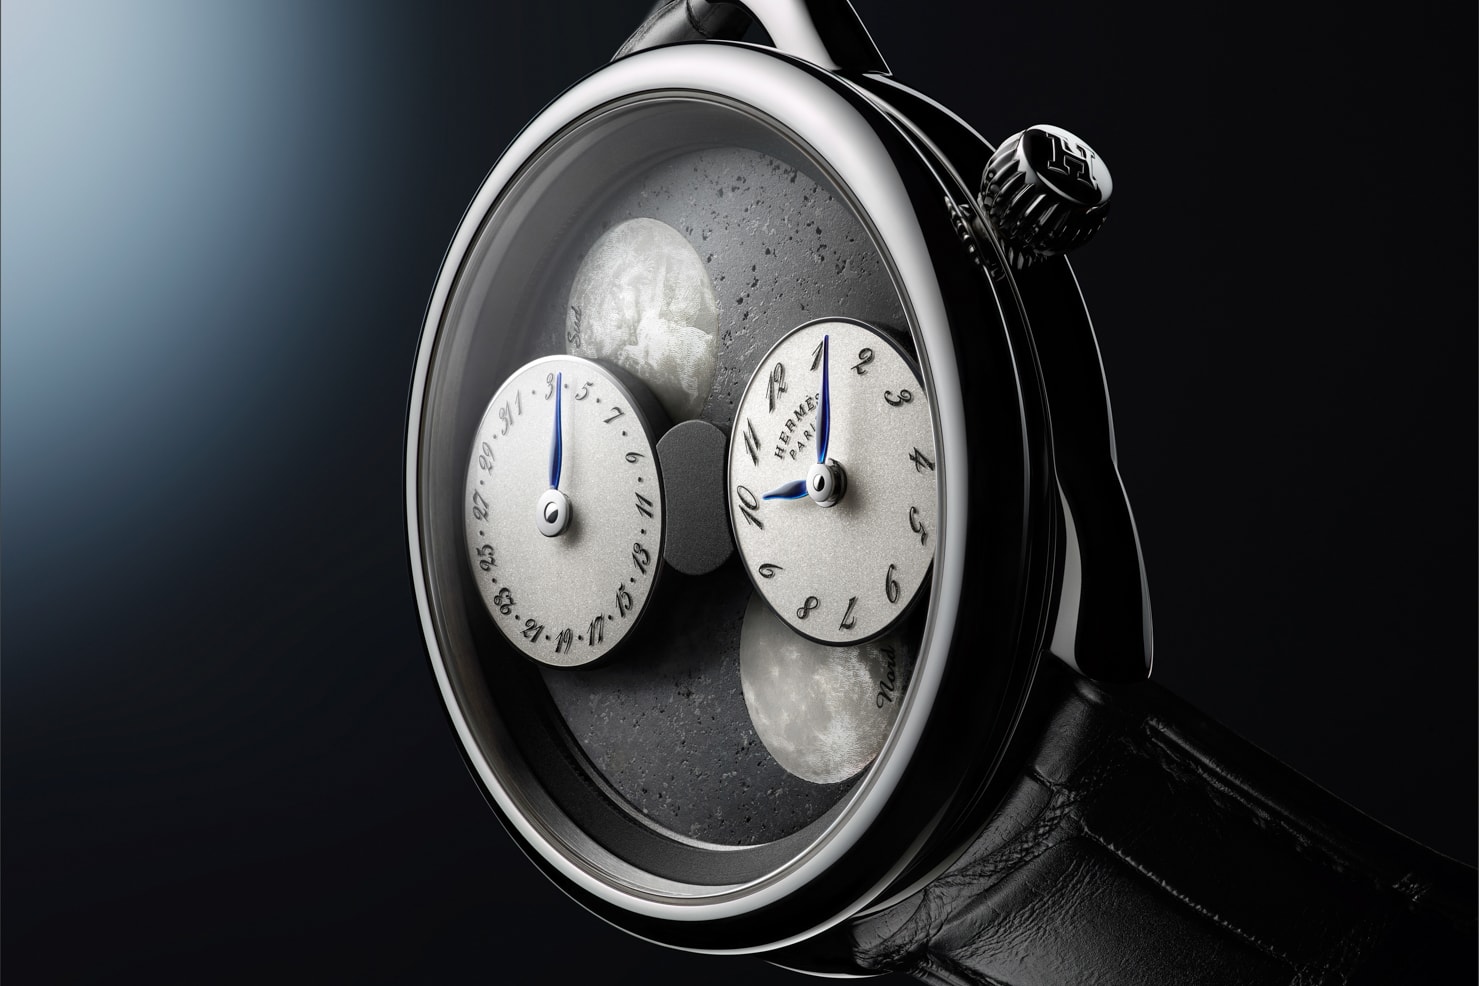 Hermès 推出 Arceau L’heure de la lune 月讀時光腕錶